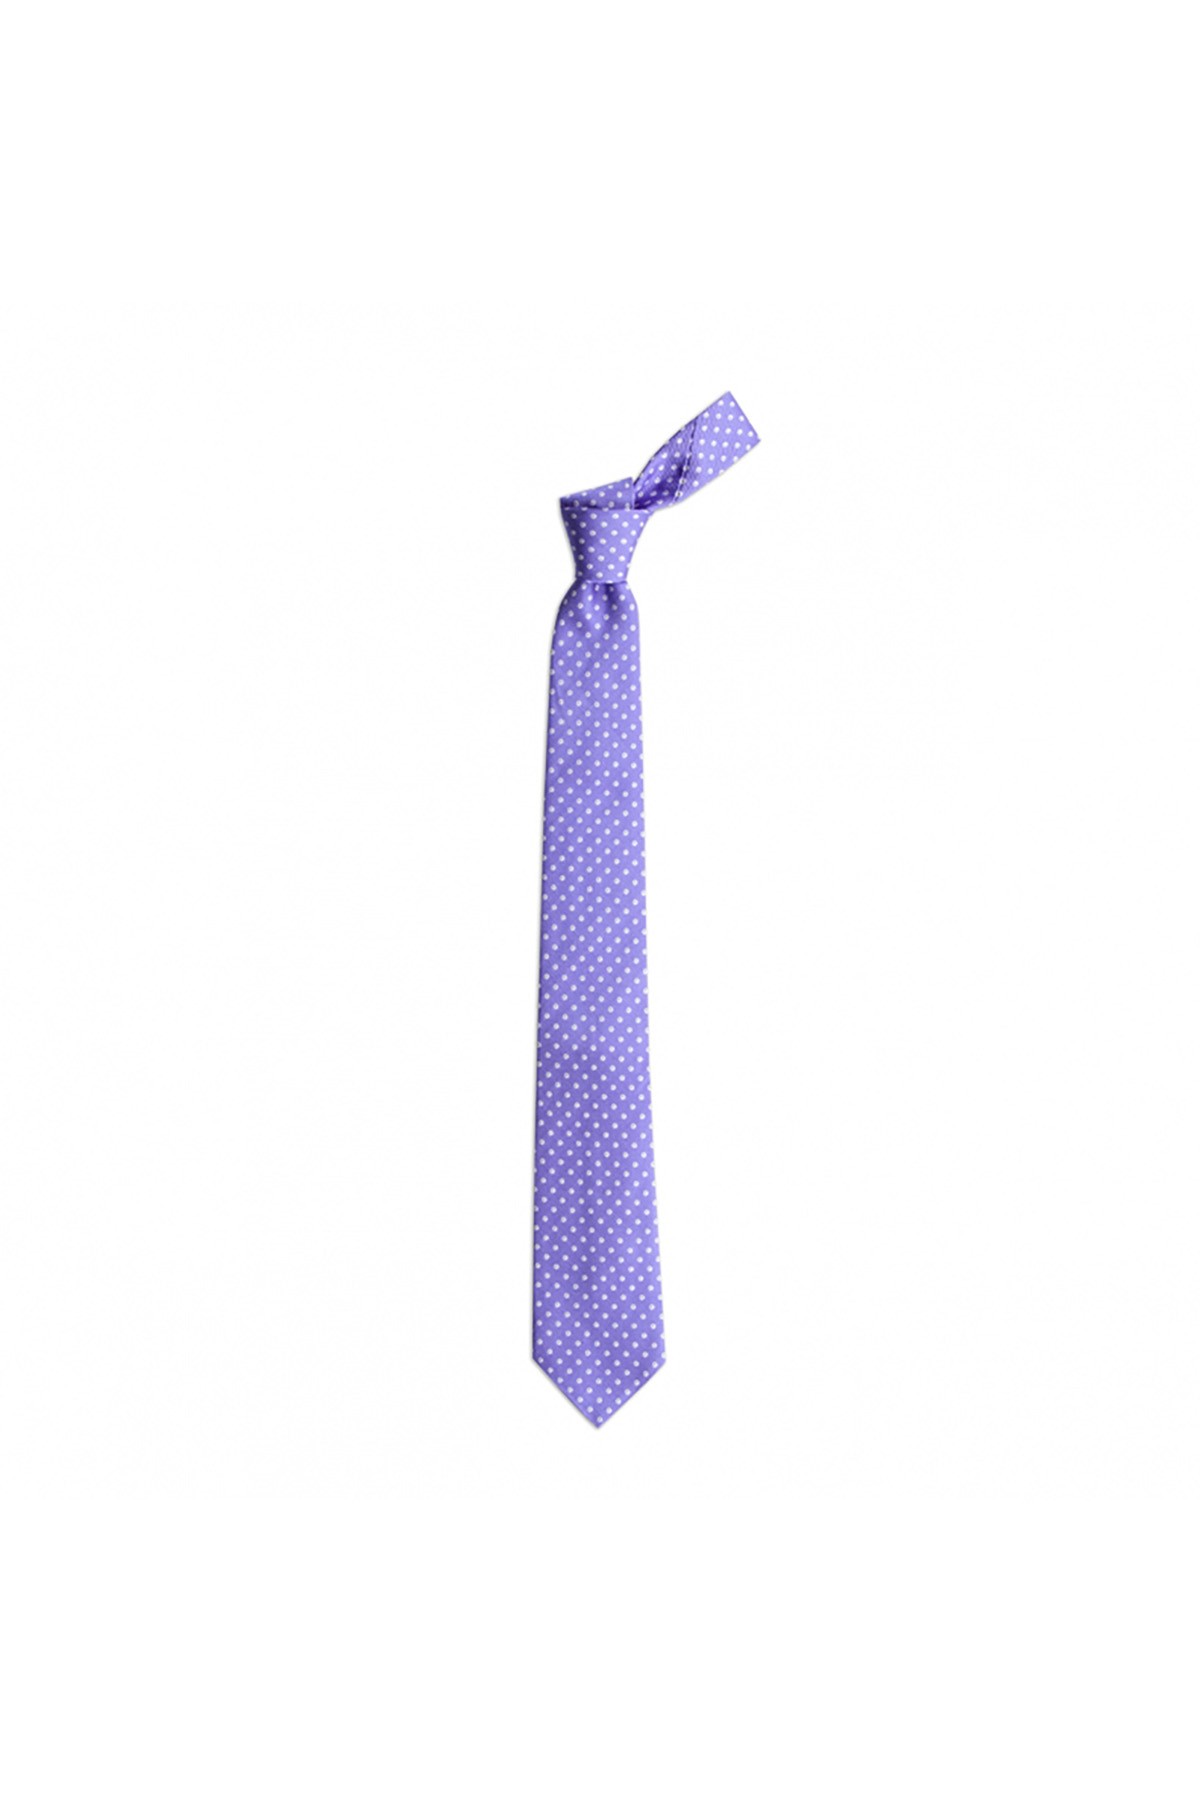 Klasik desenli 7,5 cm genişliğinde ipek kravat